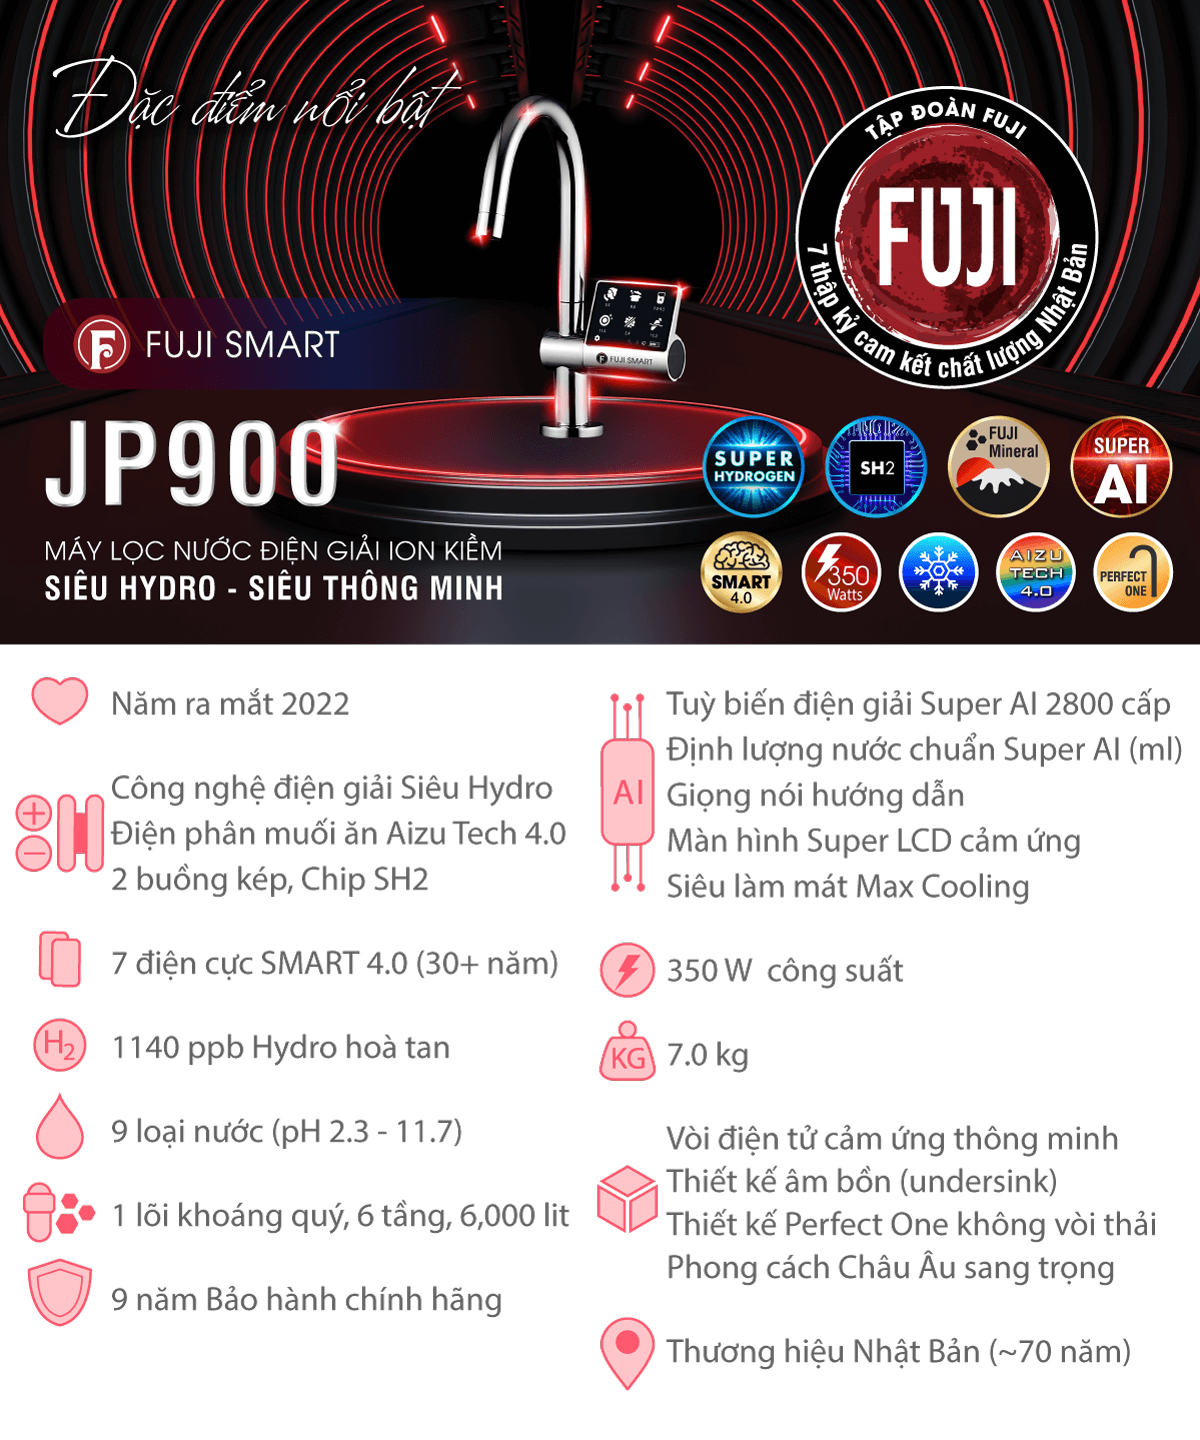 Fuji Smart JP900 là máy lọc nước iON kiềm lắp âm tủ bếp siêu thông minh với hàng loạt công nghệ không đối thủ